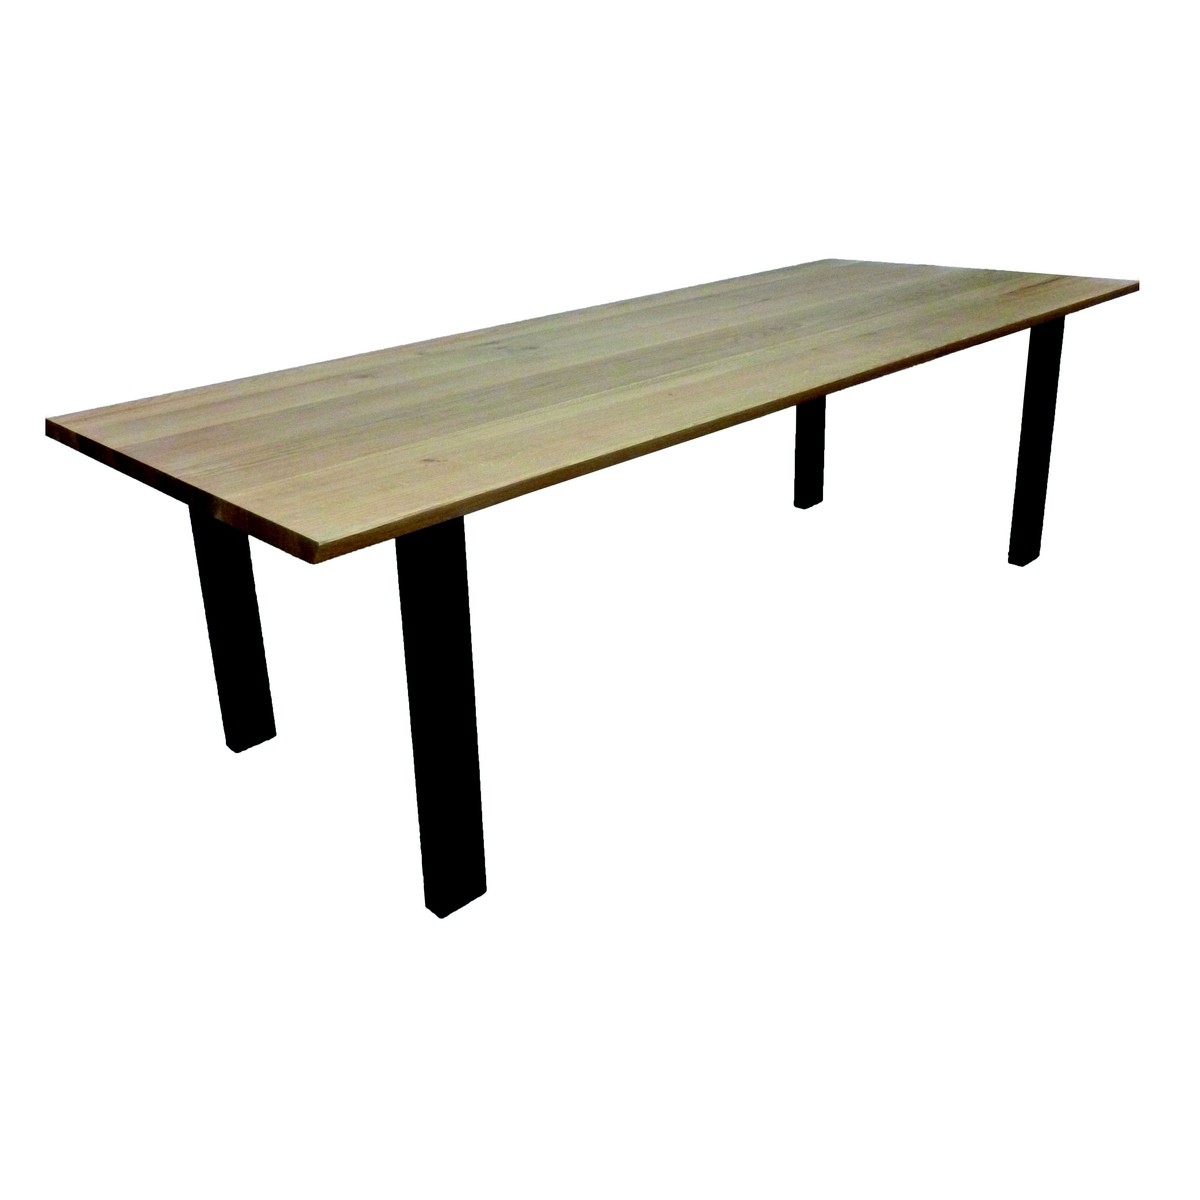   Table haute Alek Droit rectangulaire  160x100x90cm